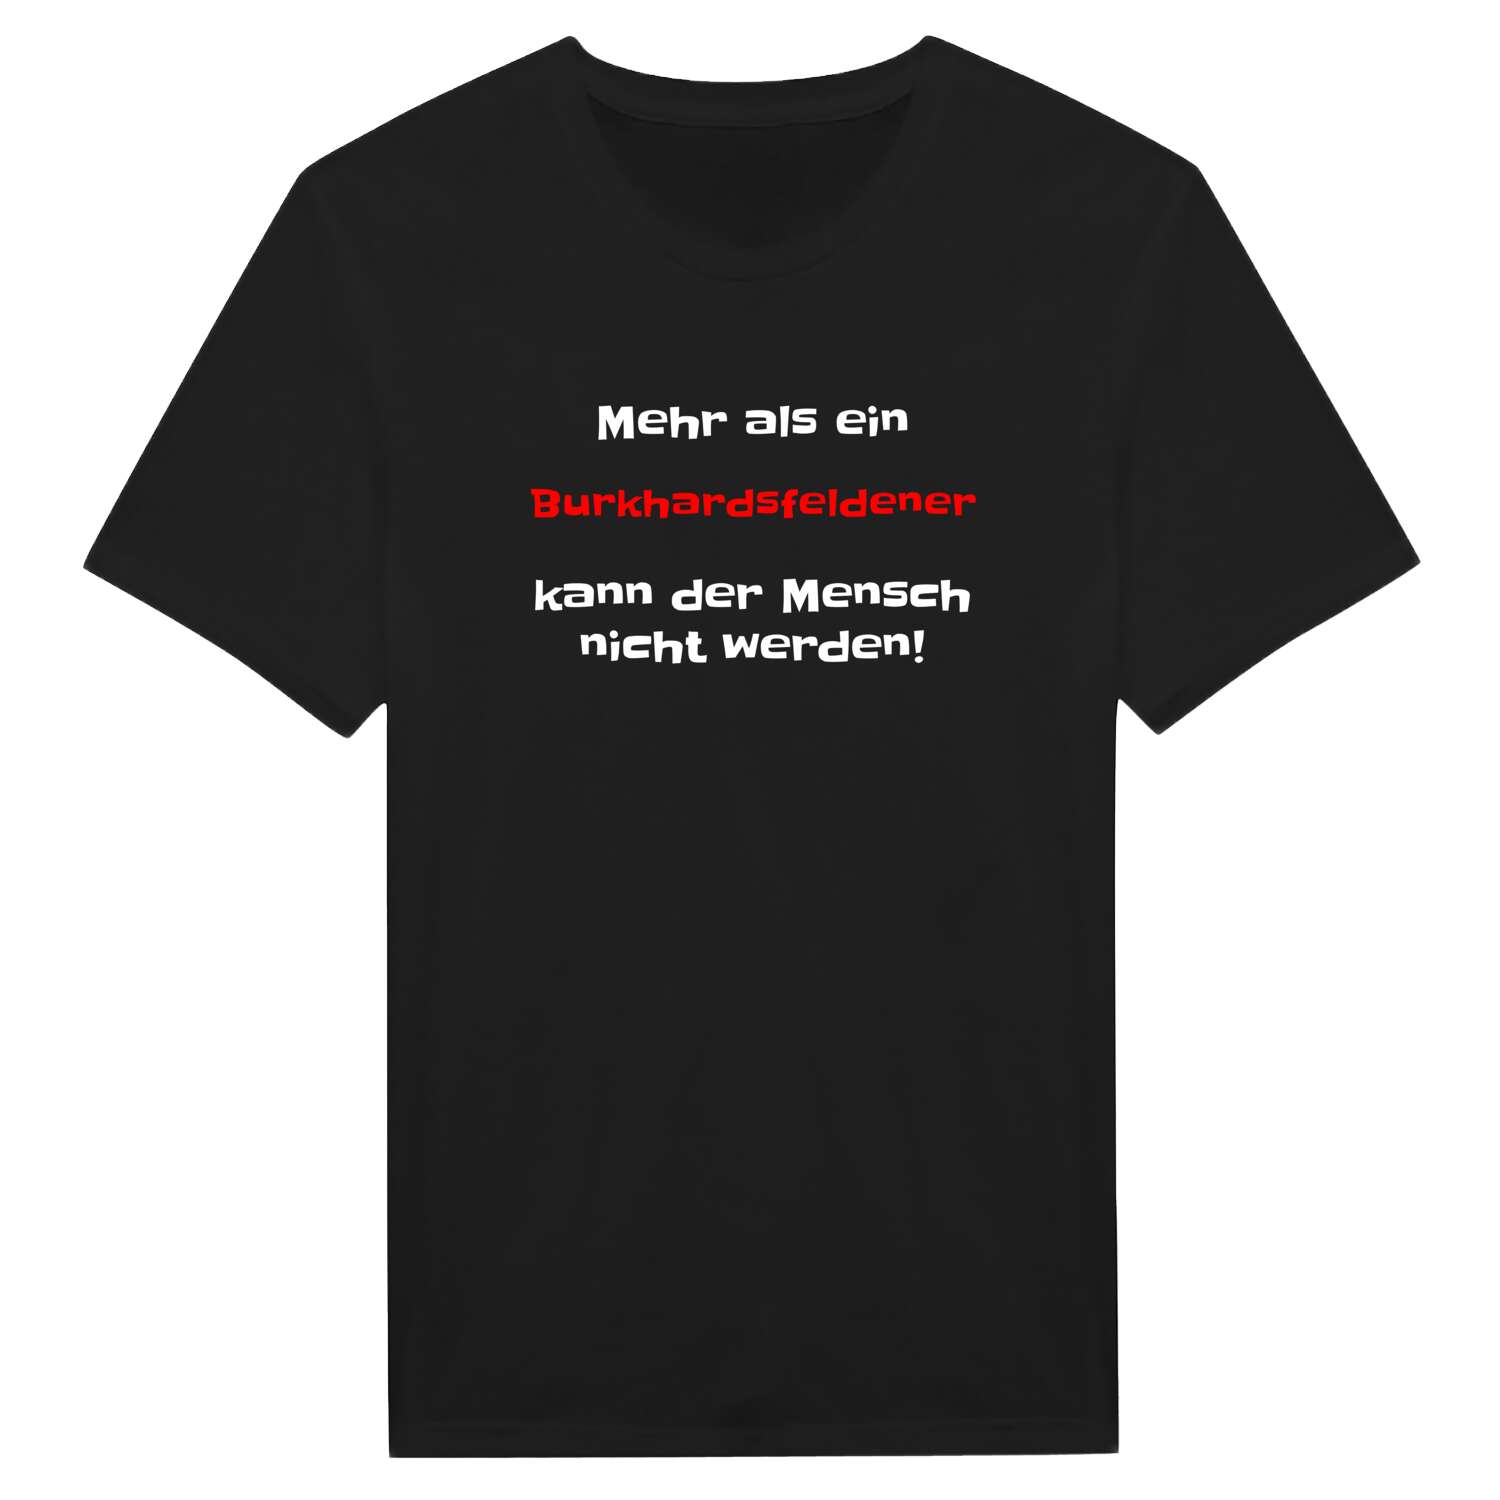 Burkhardsfelden T-Shirt »Mehr als ein«